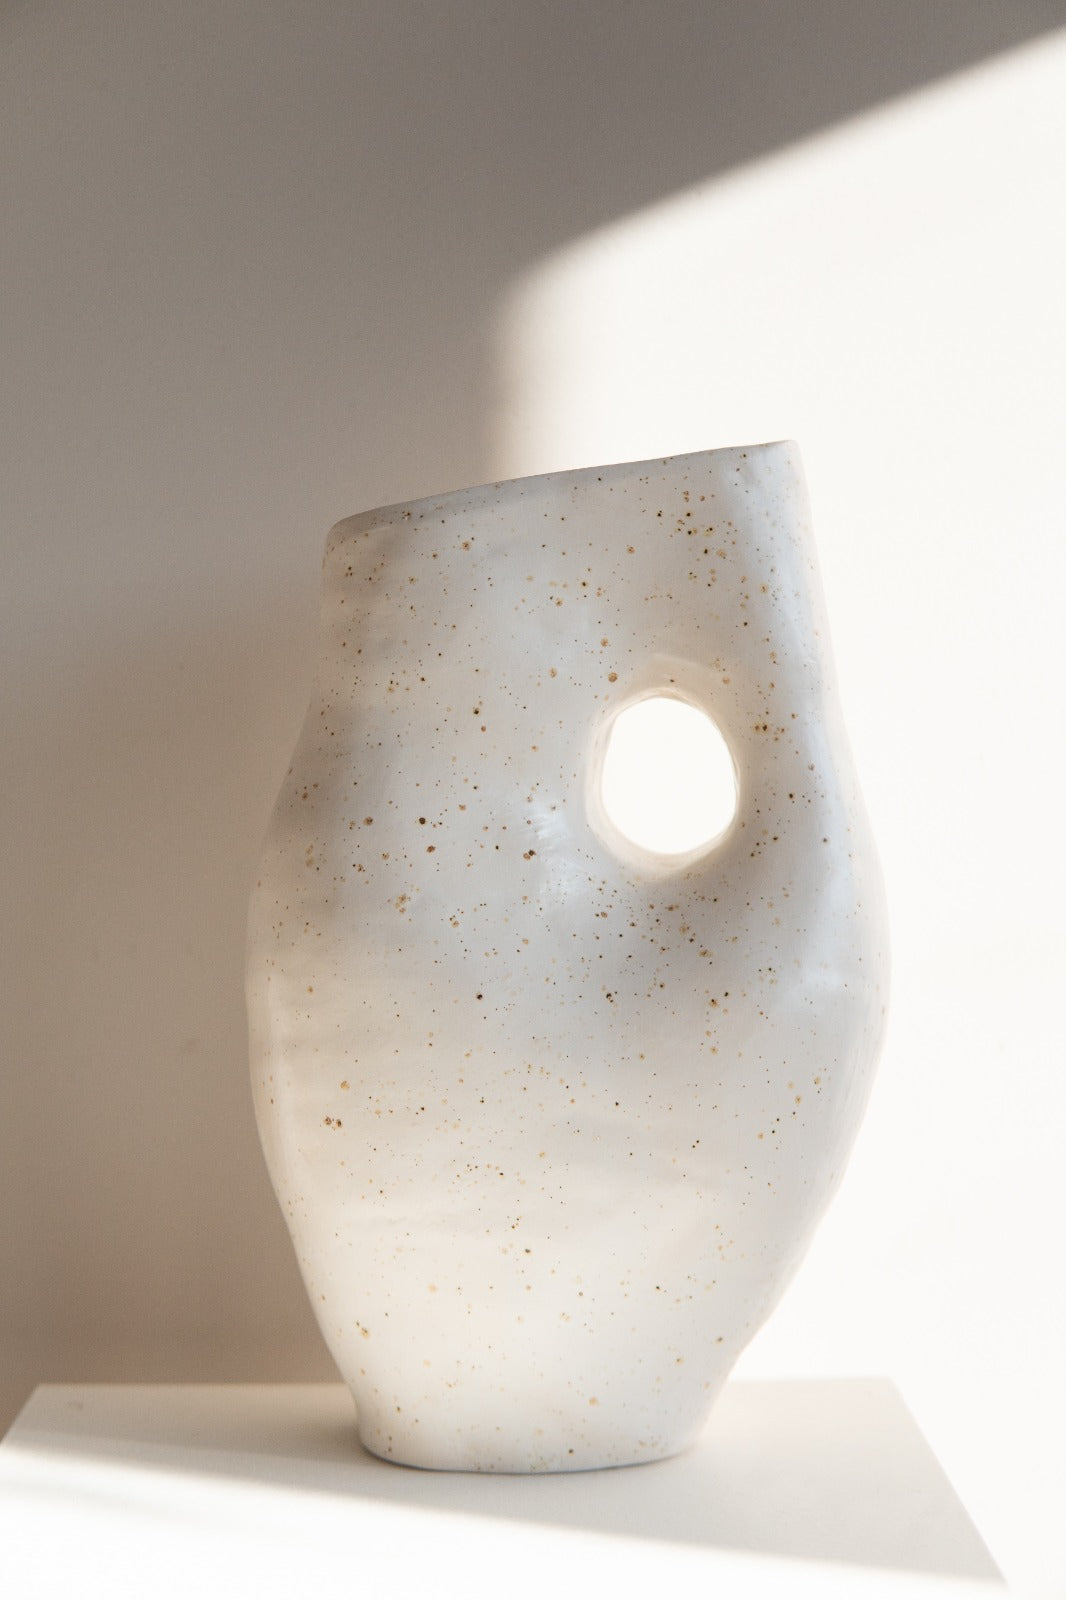 A's Vase #1